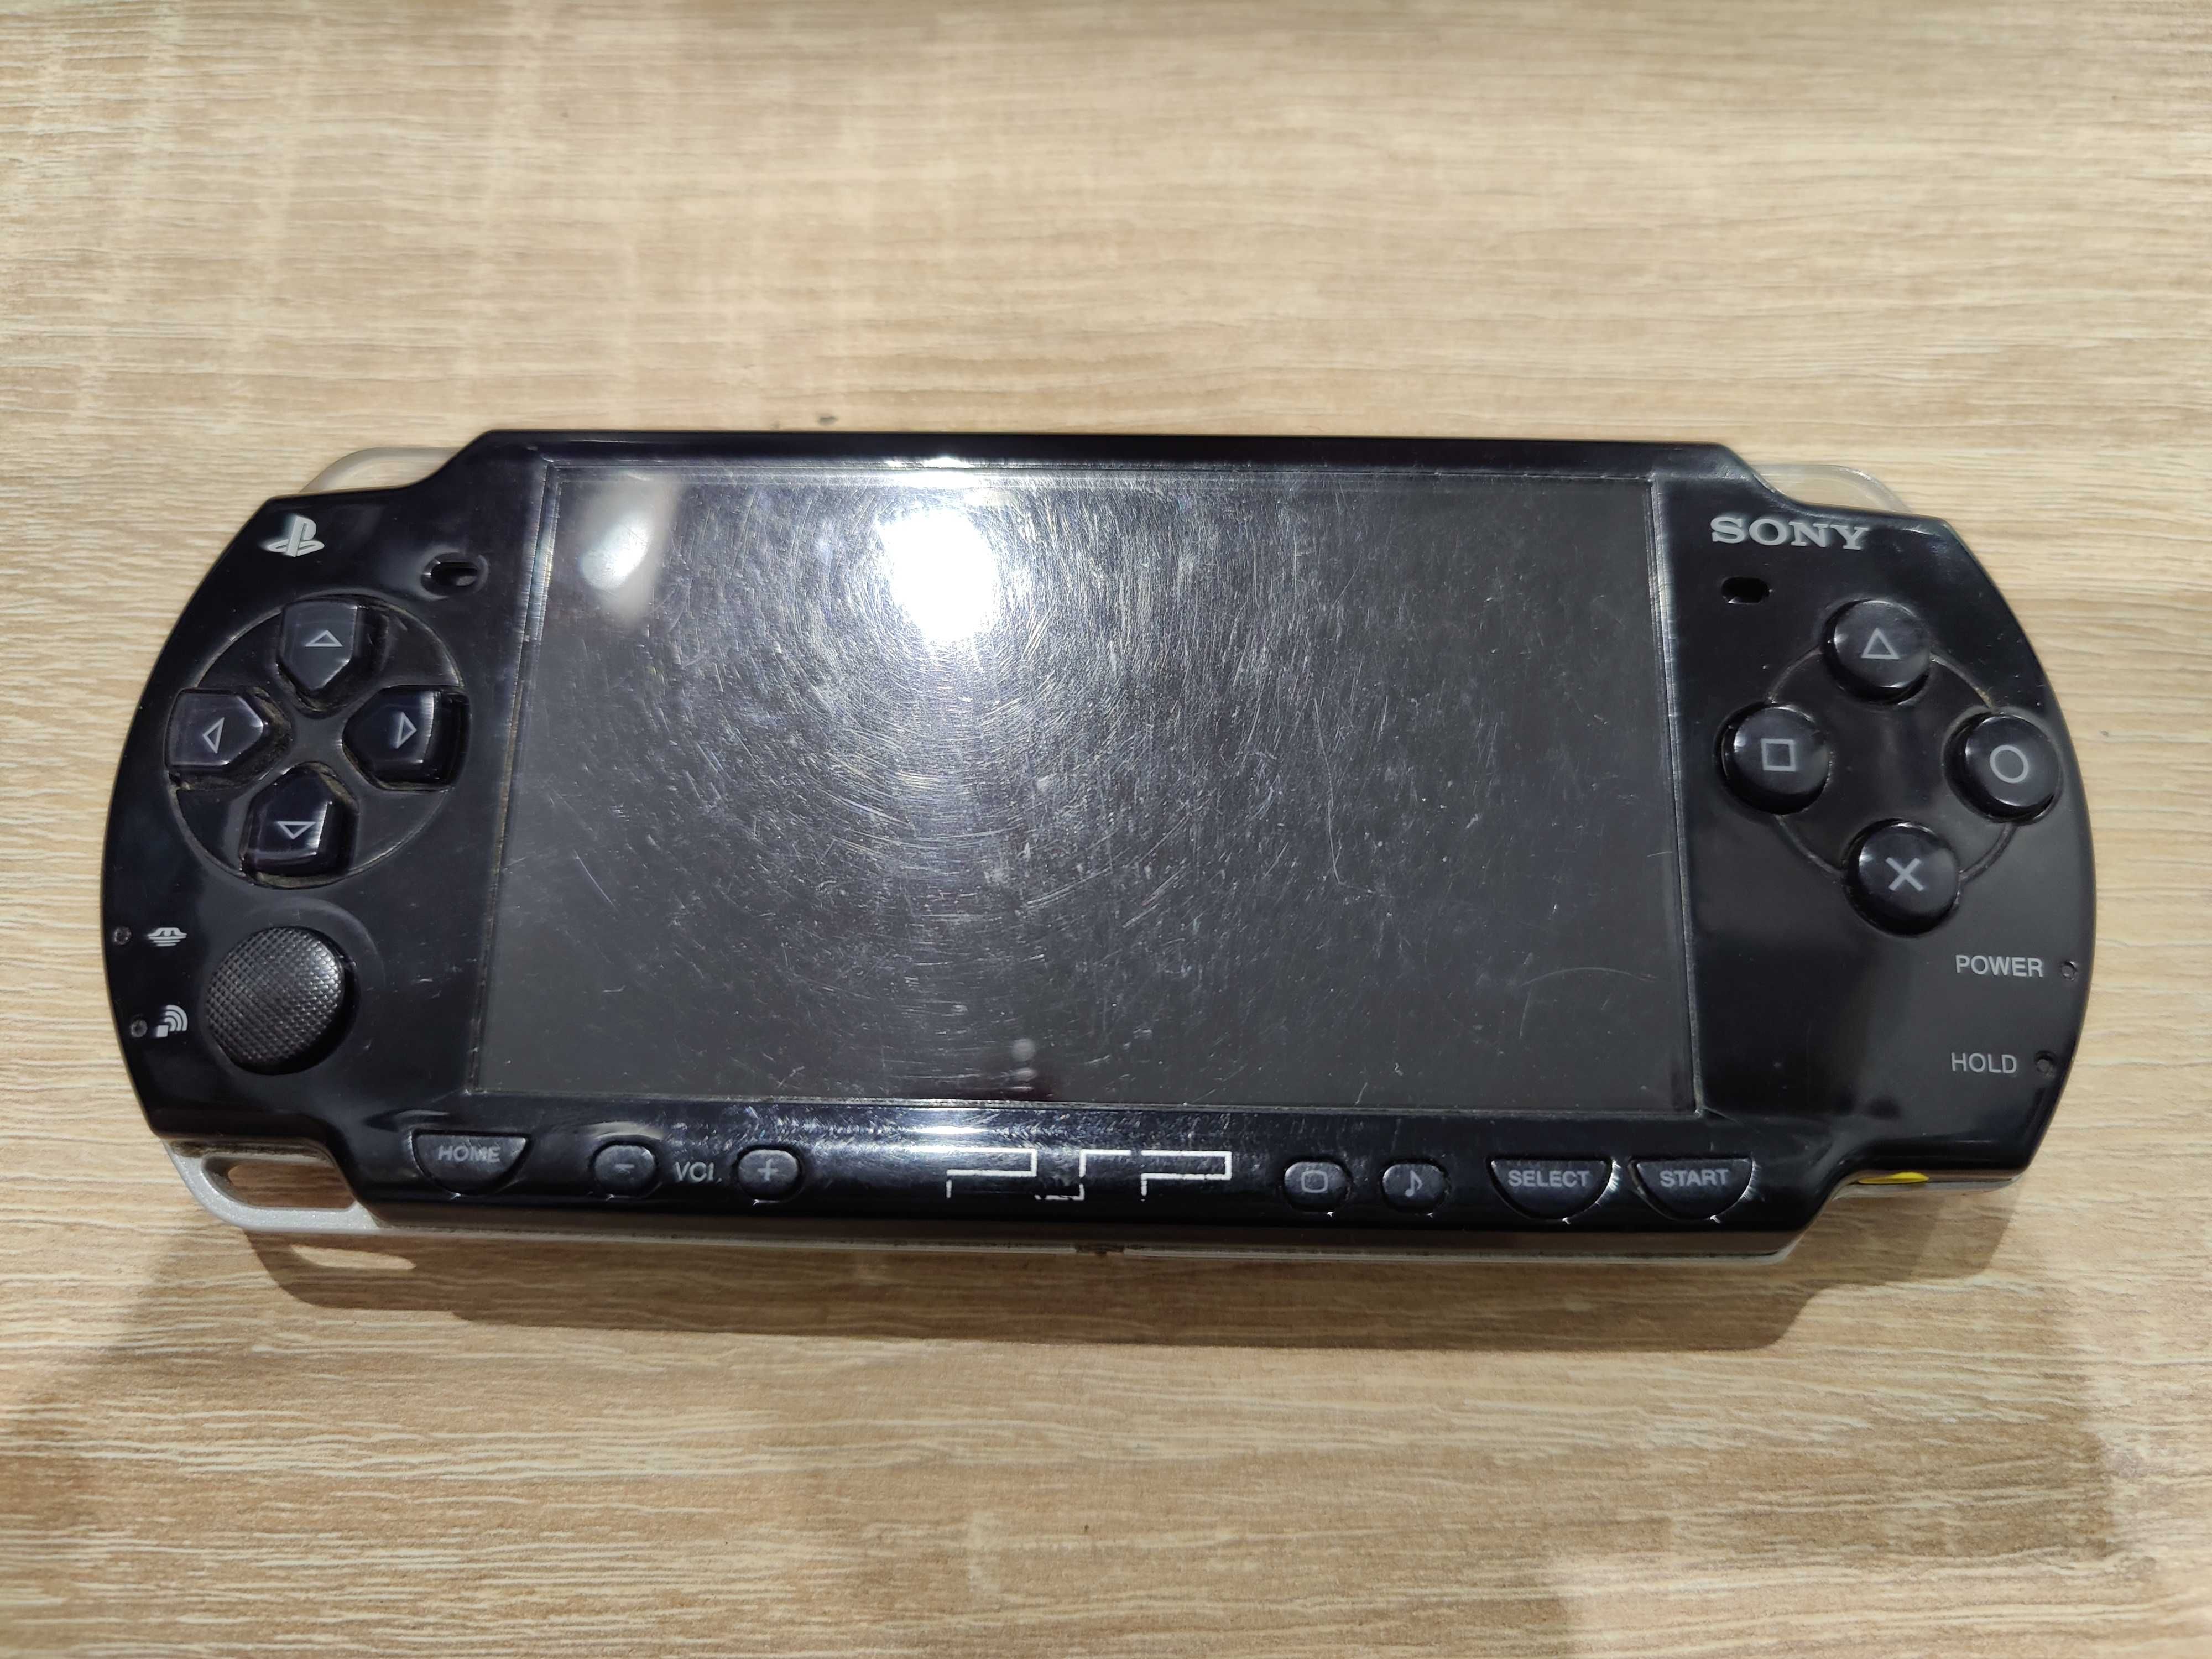 Konsola PSP Playstation Portable zestaw 3004 przerobiona